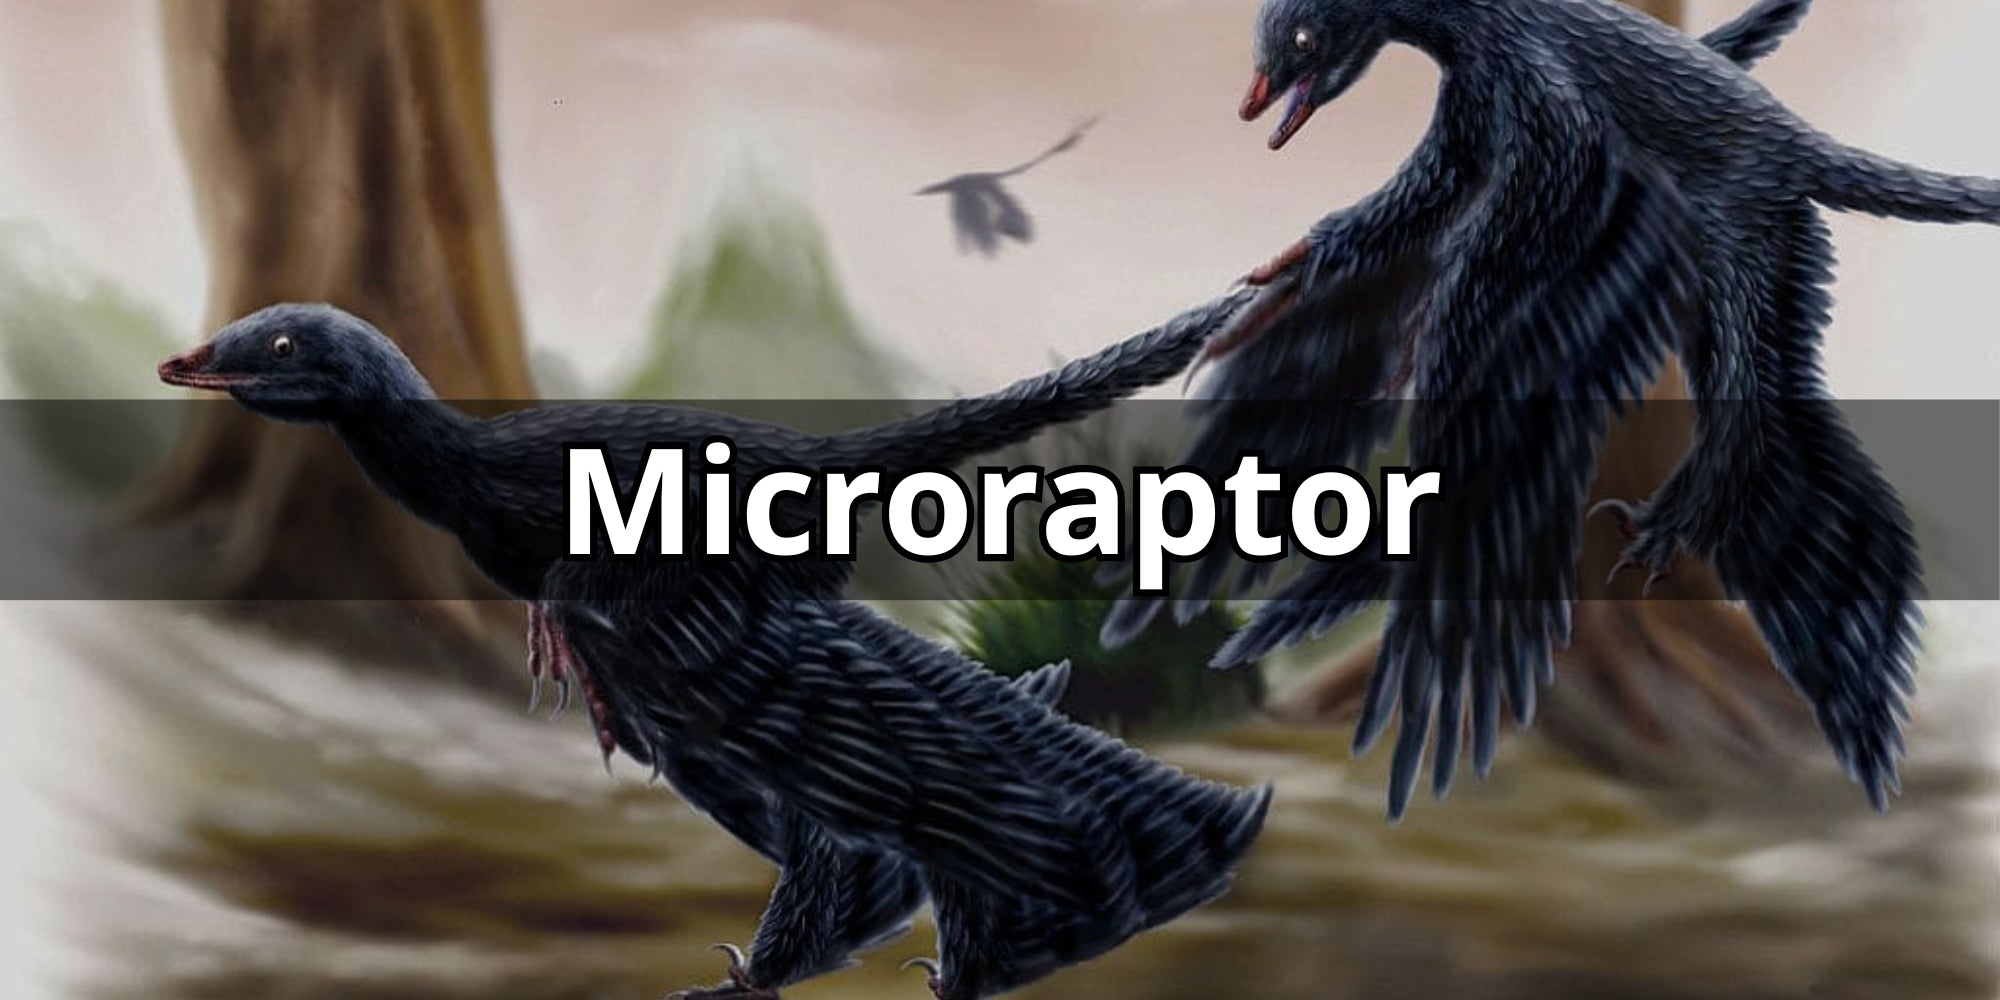 Micropator